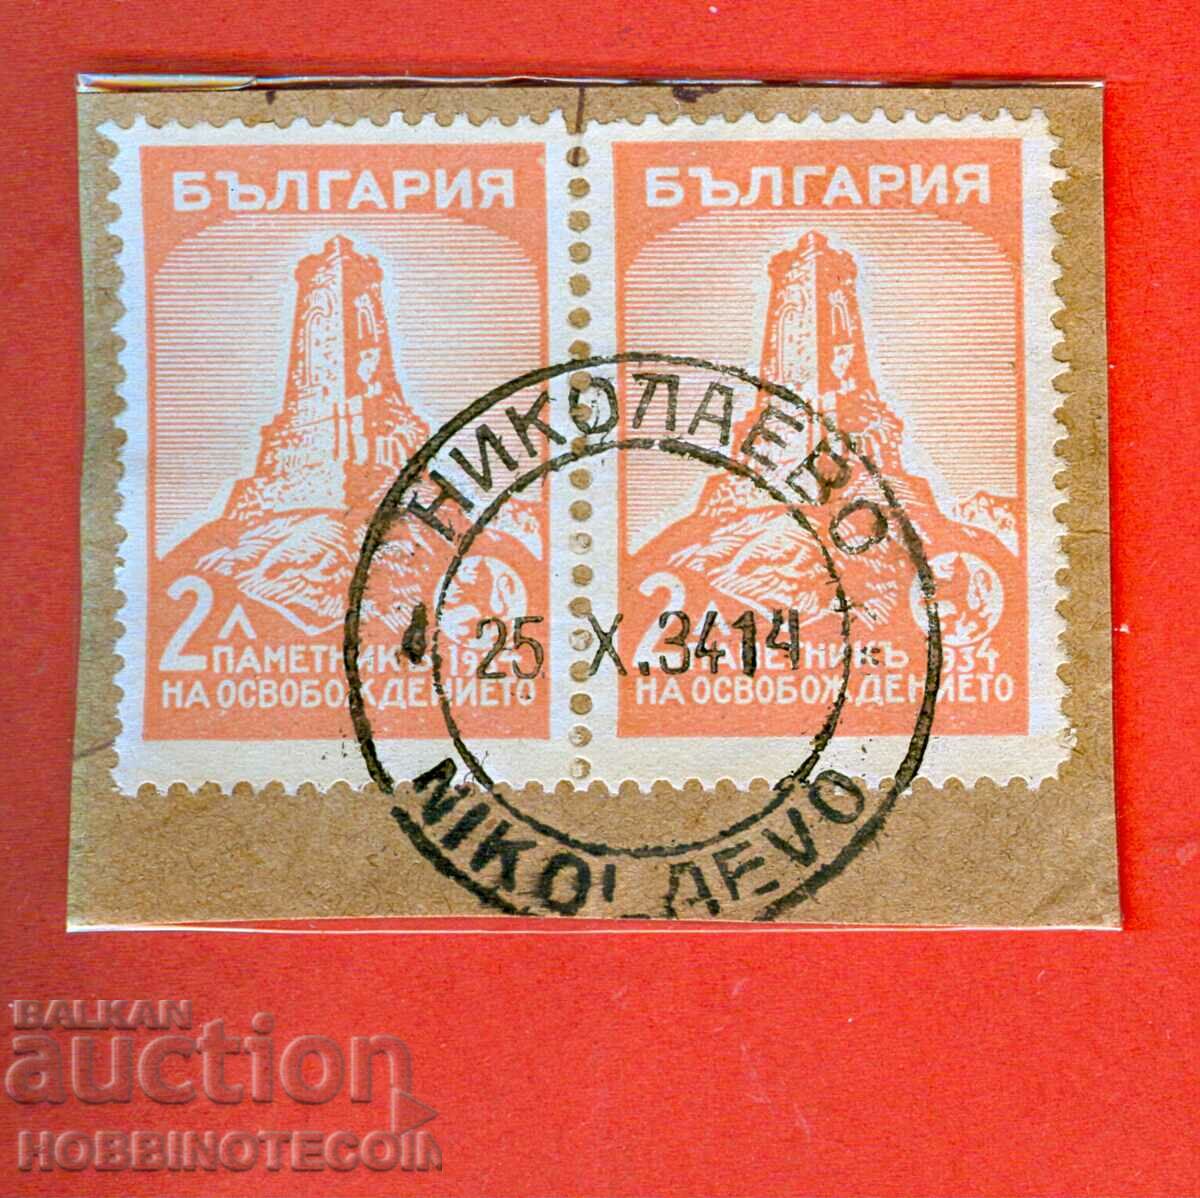 Σφραγίδα SHIPKA 2 x 2 Lv NIKOLAEVO - 25 X 1934